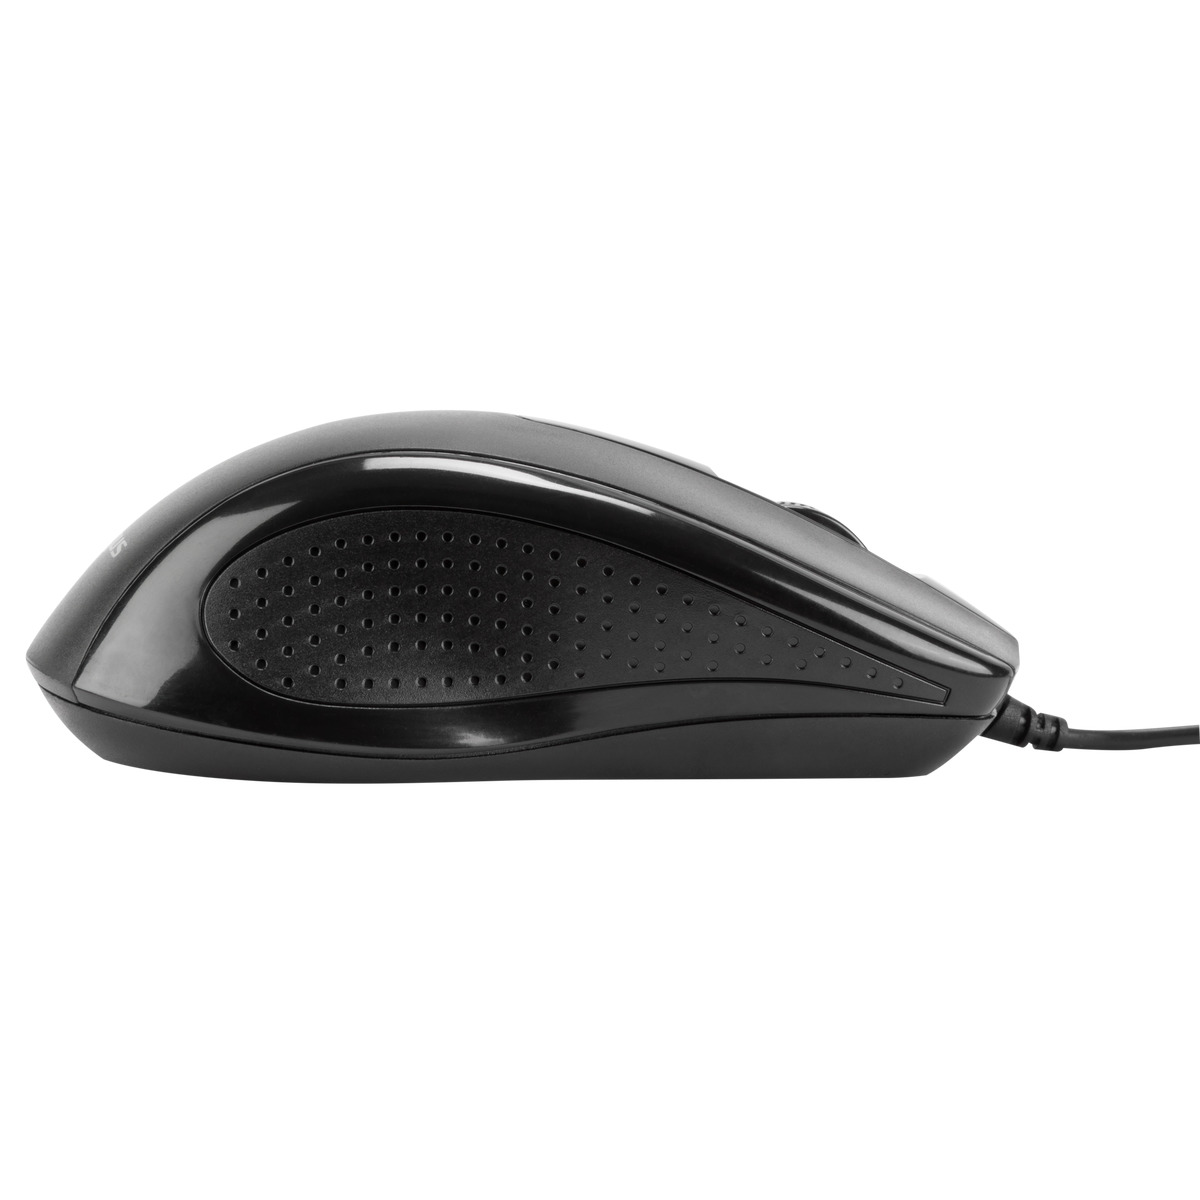 Chuột Targus U660 USB Optical Mouse - Màu Đen- Hãng chính hãng